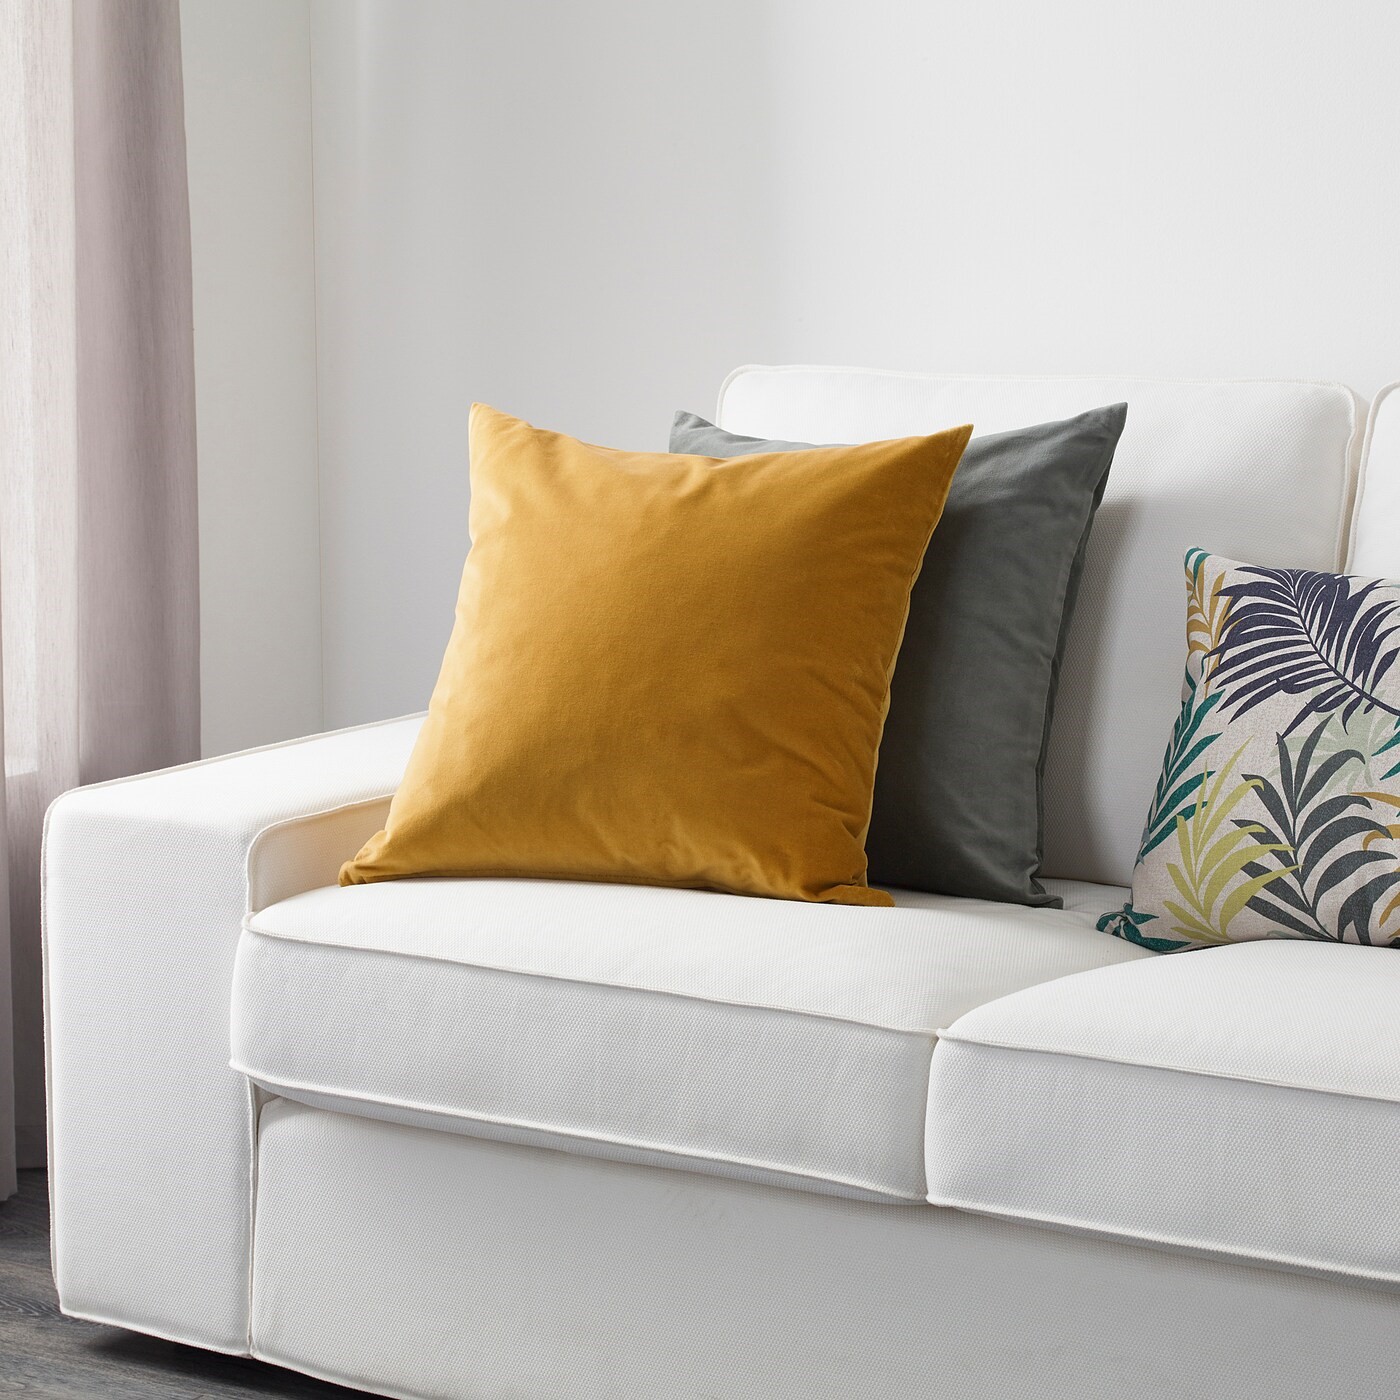 Công thức thiết kế đệm ghế cho sofa mà bạn nên biết